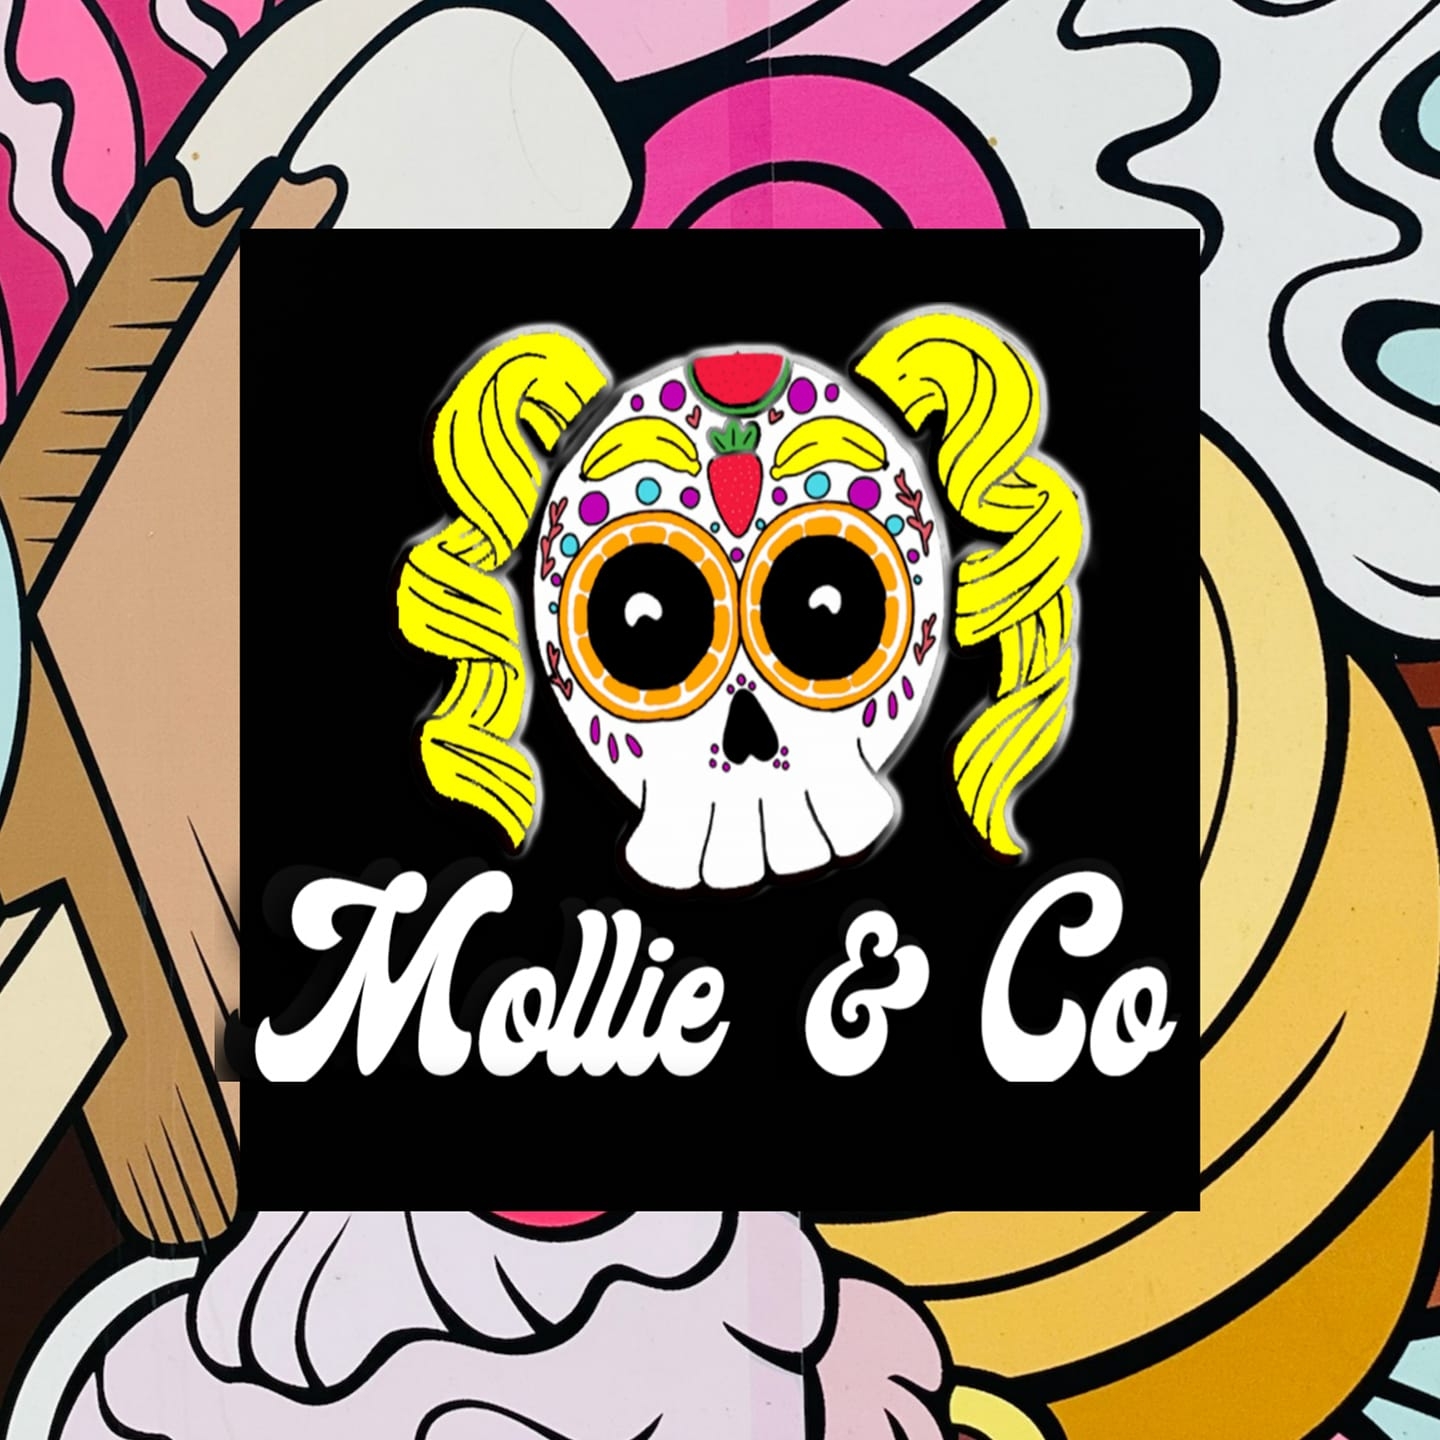 Mollie & Co.